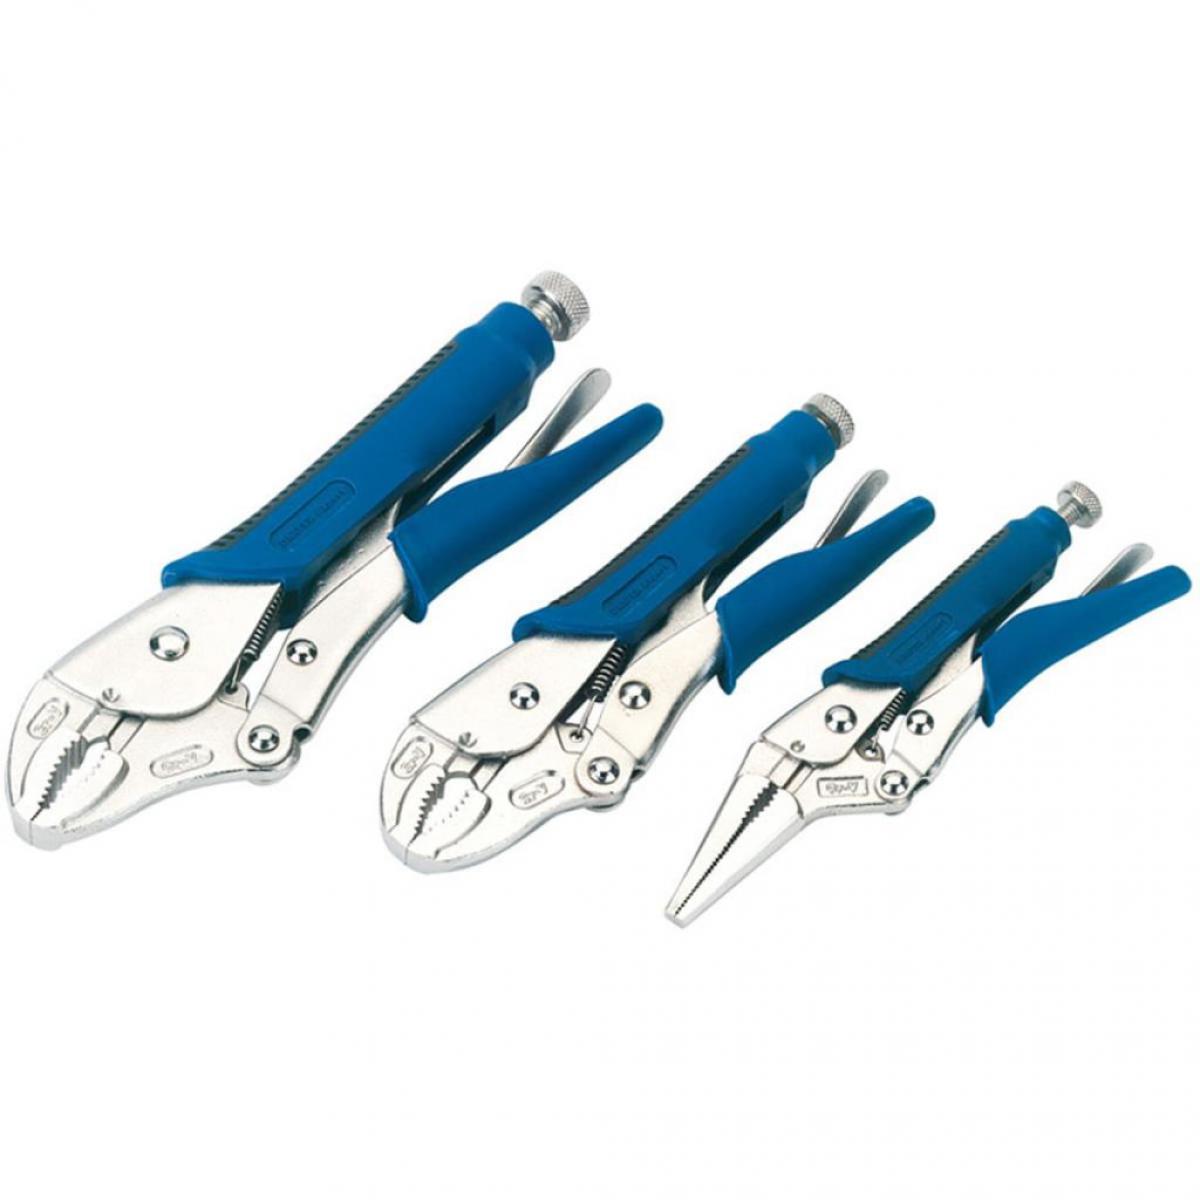 Draper Tools - Draper Tools Jeu de pinces-étaux 3 pièces Bleu 88293 - Accessoires barbecue